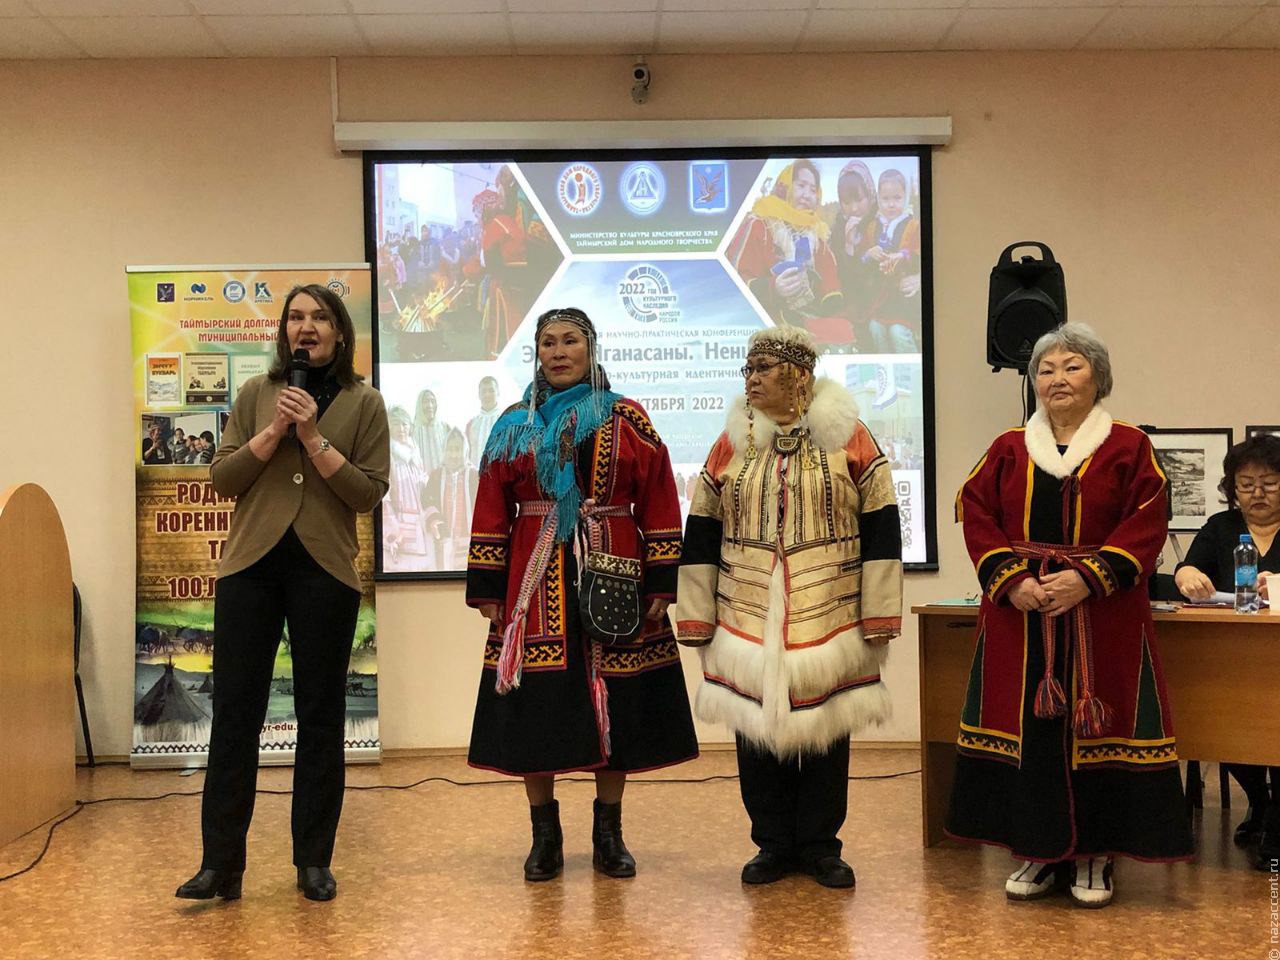 На конференции в Петербурге обсуждают сохранение культуры ненцев, энцев и нганасан